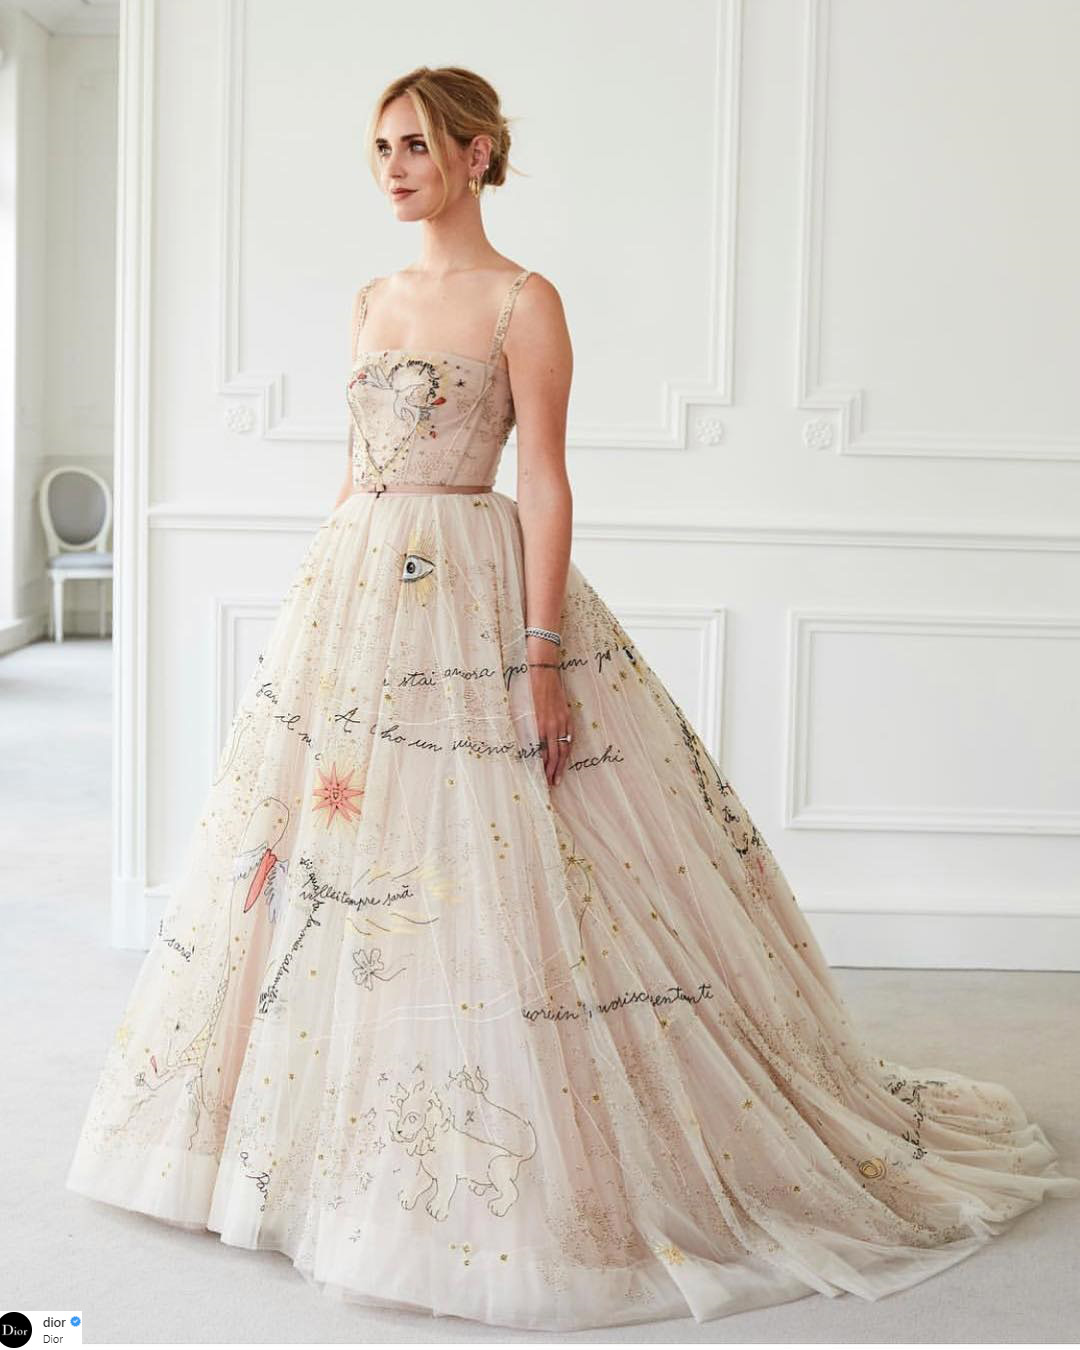 Hành trình mê hoặc tạo nên chiếc váy cưới Dior trong mơ của Miranda Kerr   Tạp chí Đẹp